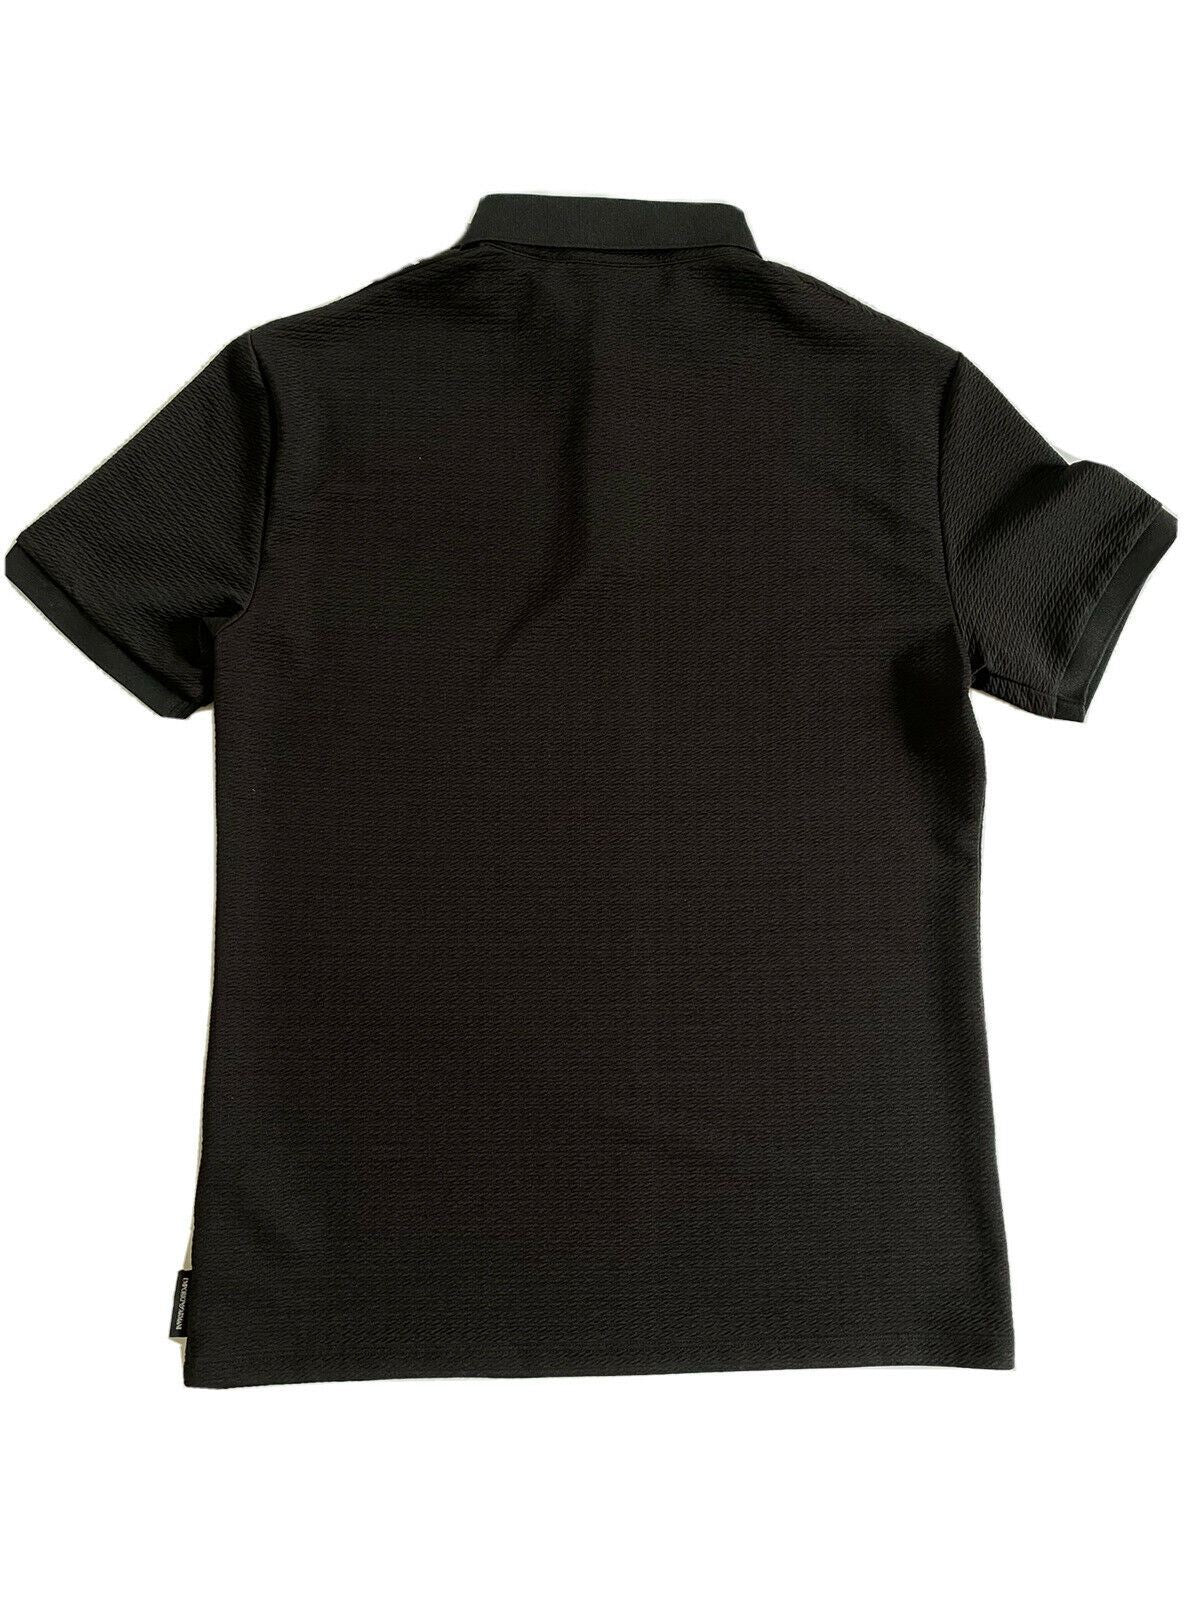 NWT $245 Emporio Armani Short Sleeve Black Polo Shirt 3G1F72